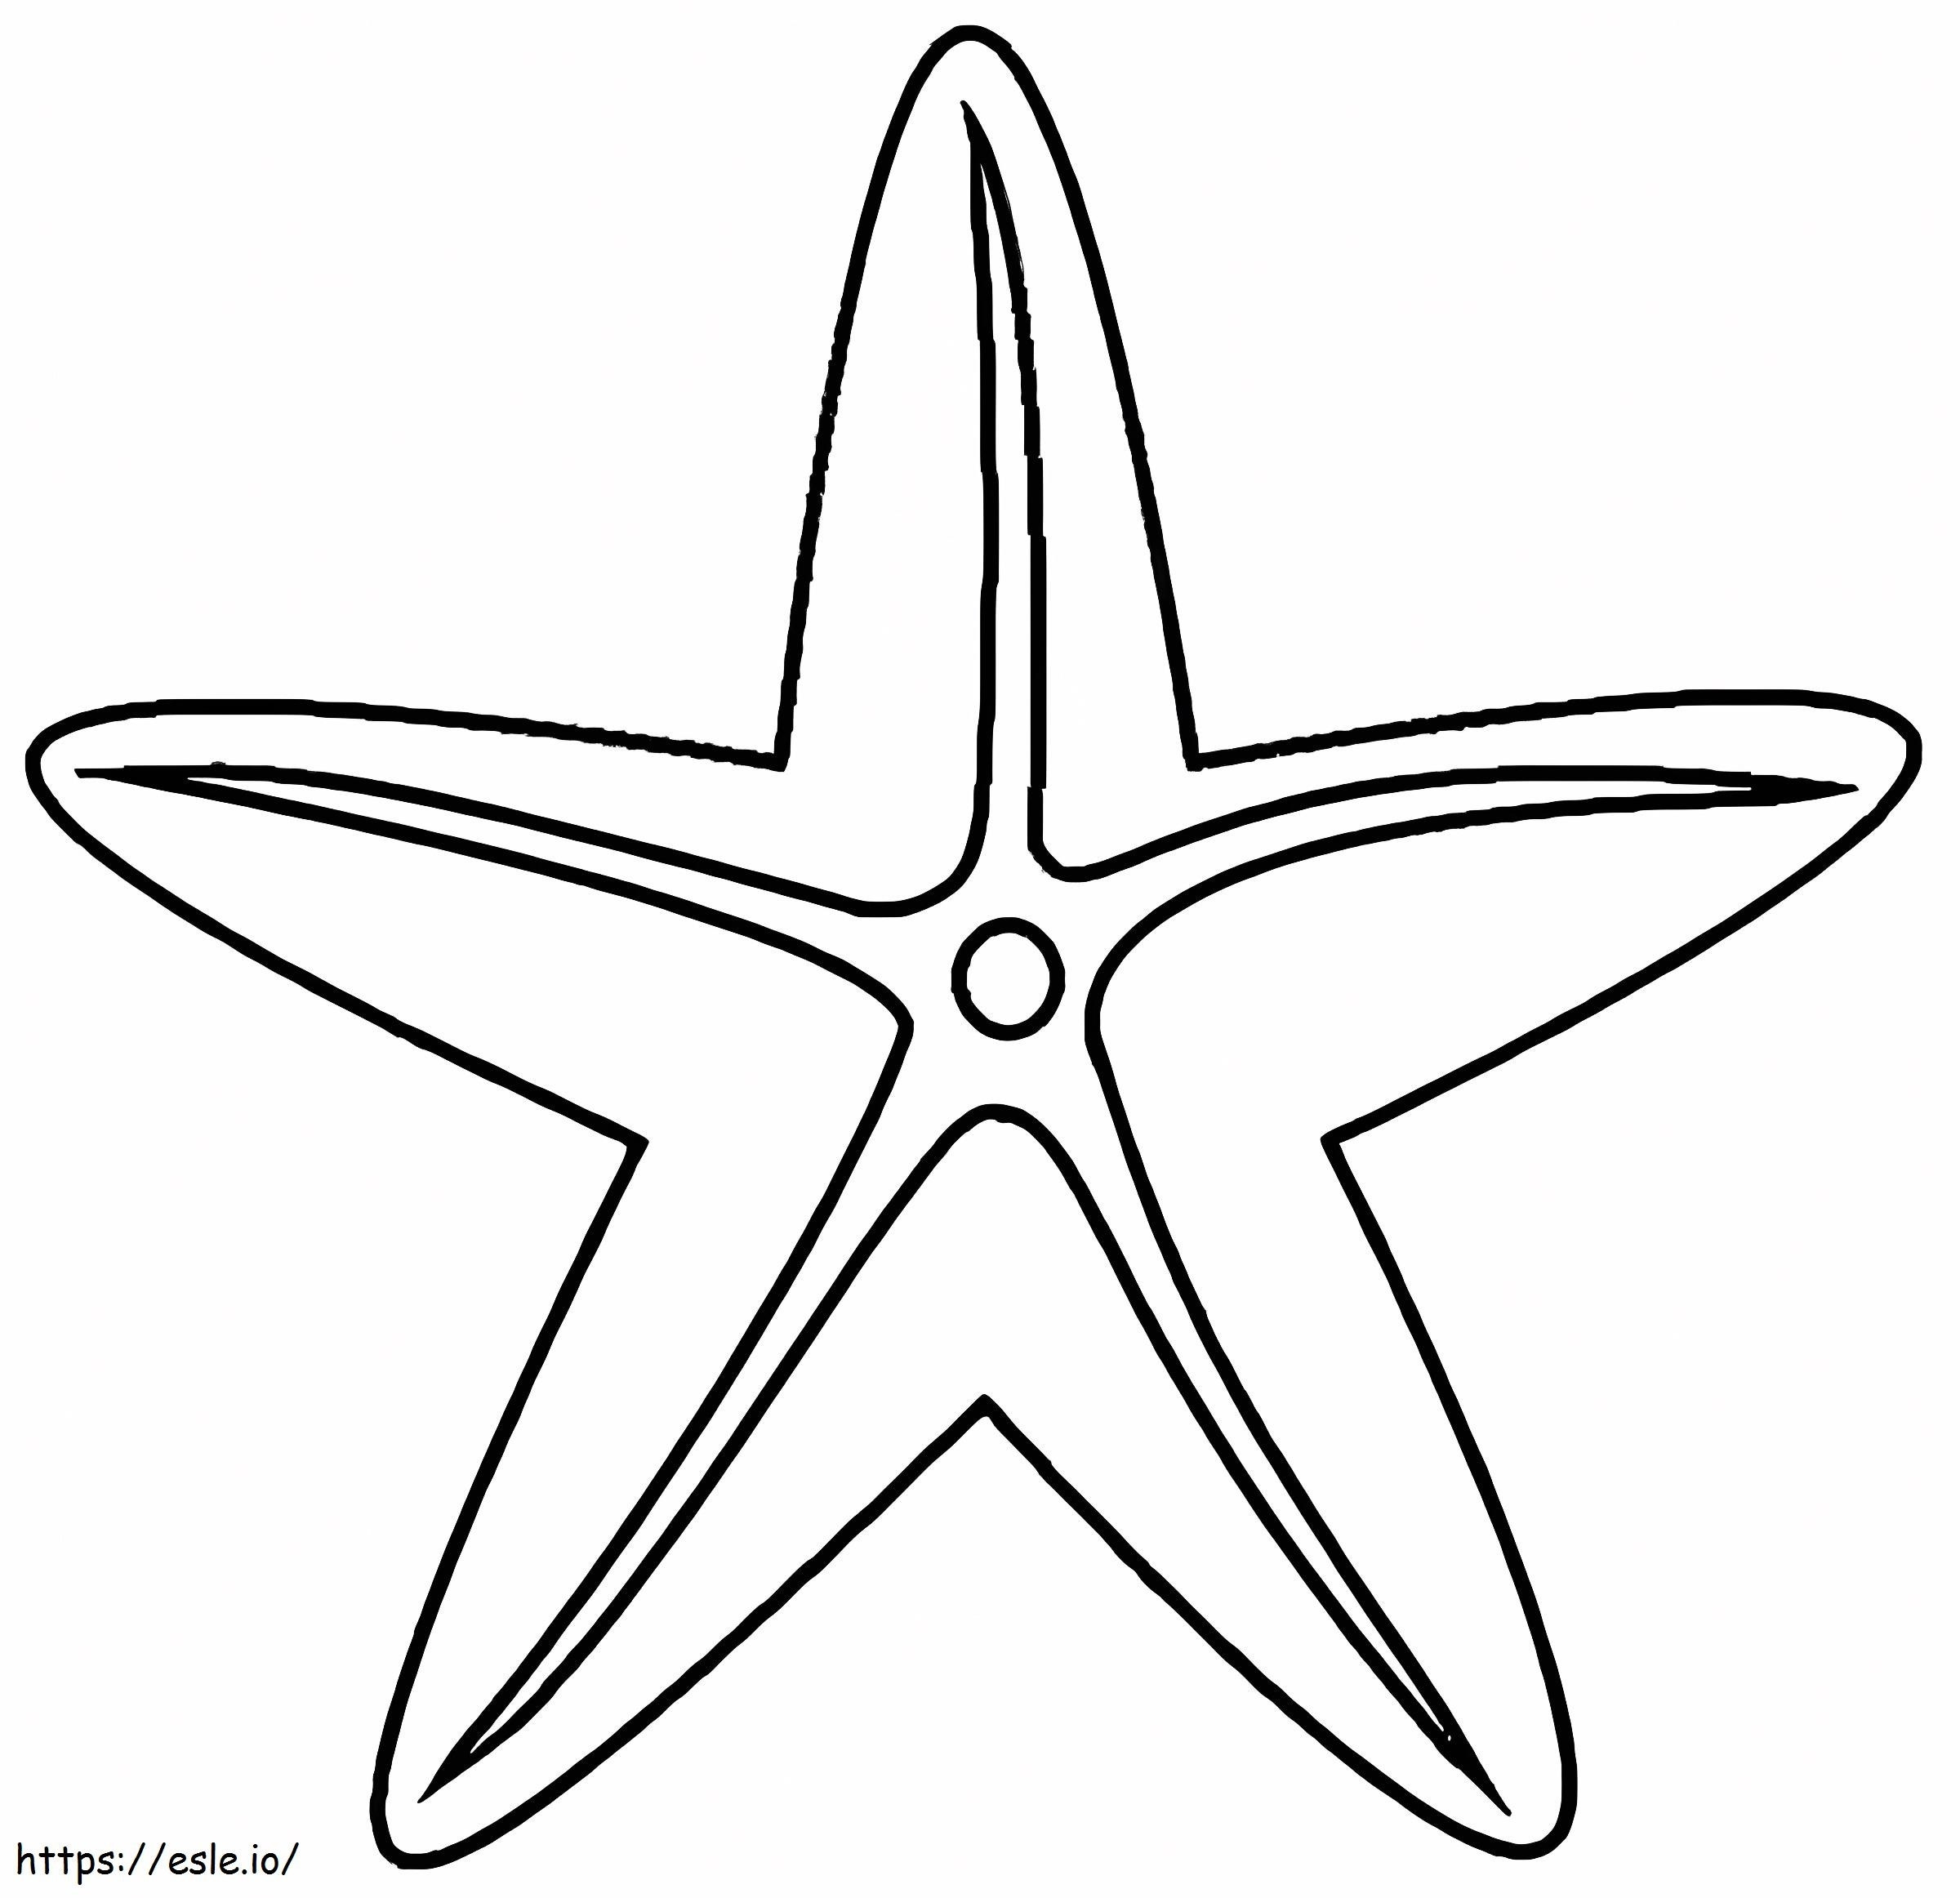 Printable Starfish coloring page